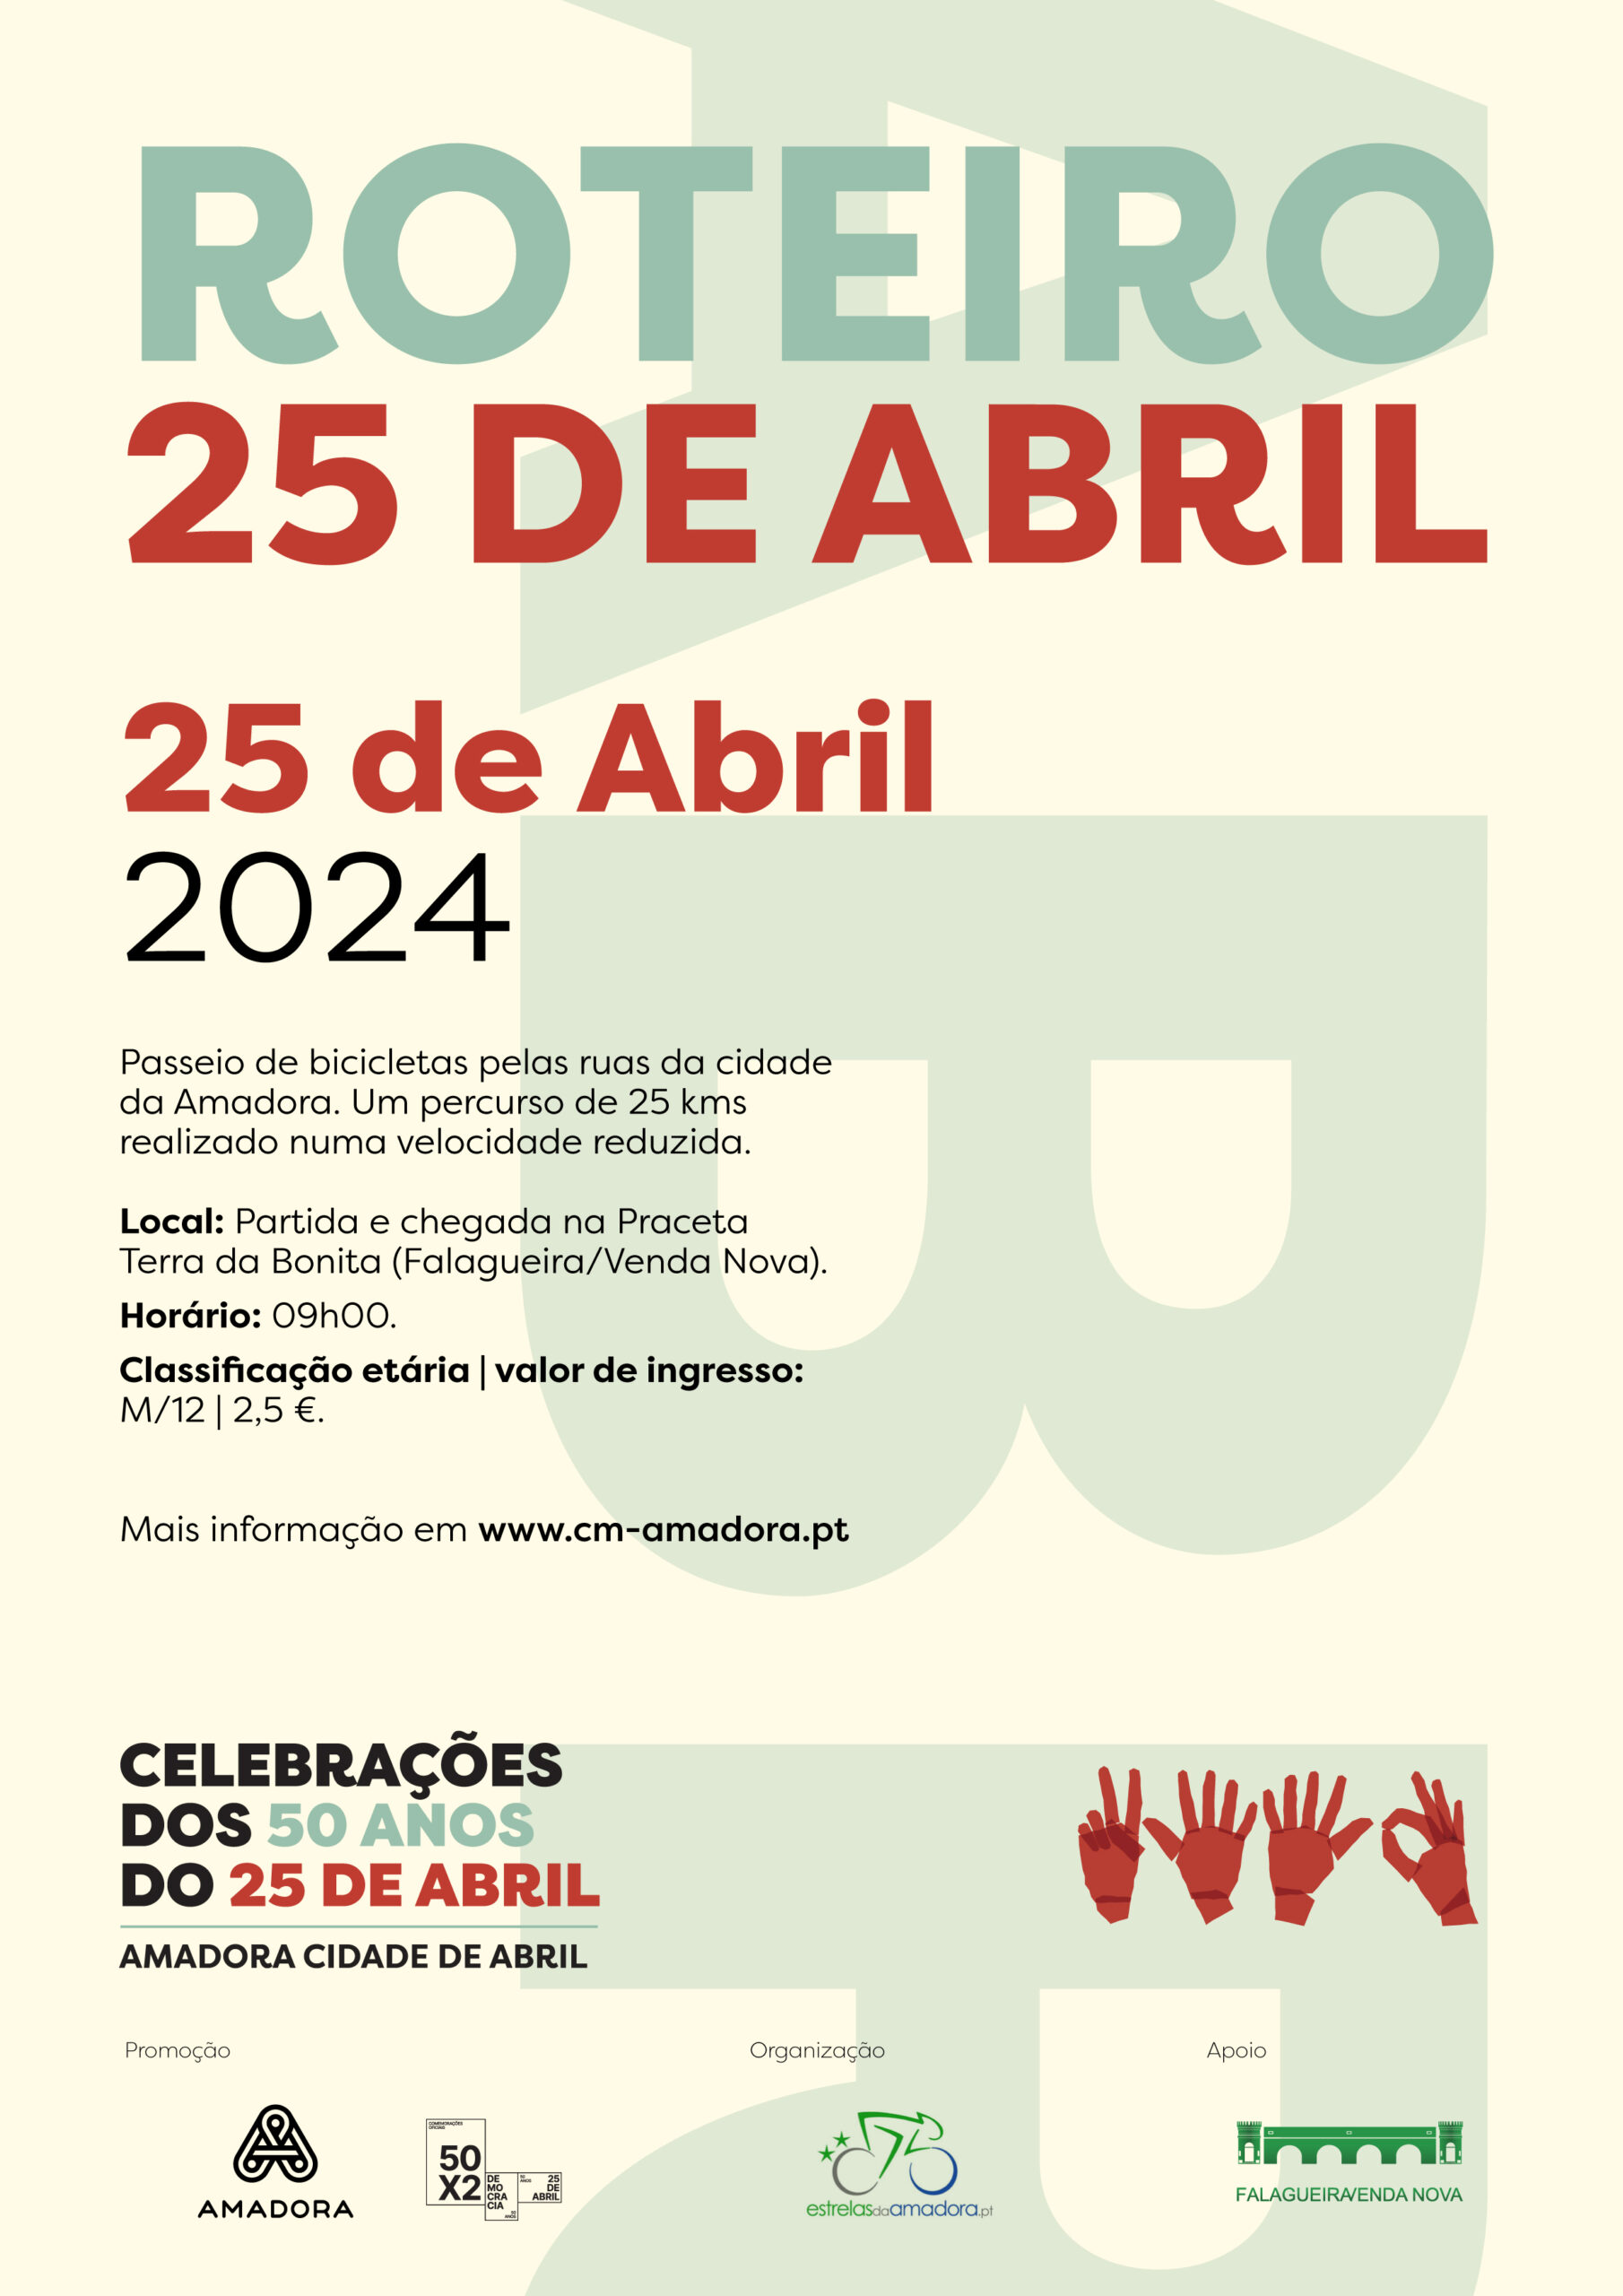 Capa Oficial do Evento Roteiro 25 de Abril - Passeio de bicicletas pelas ruas da cidade da Amadora